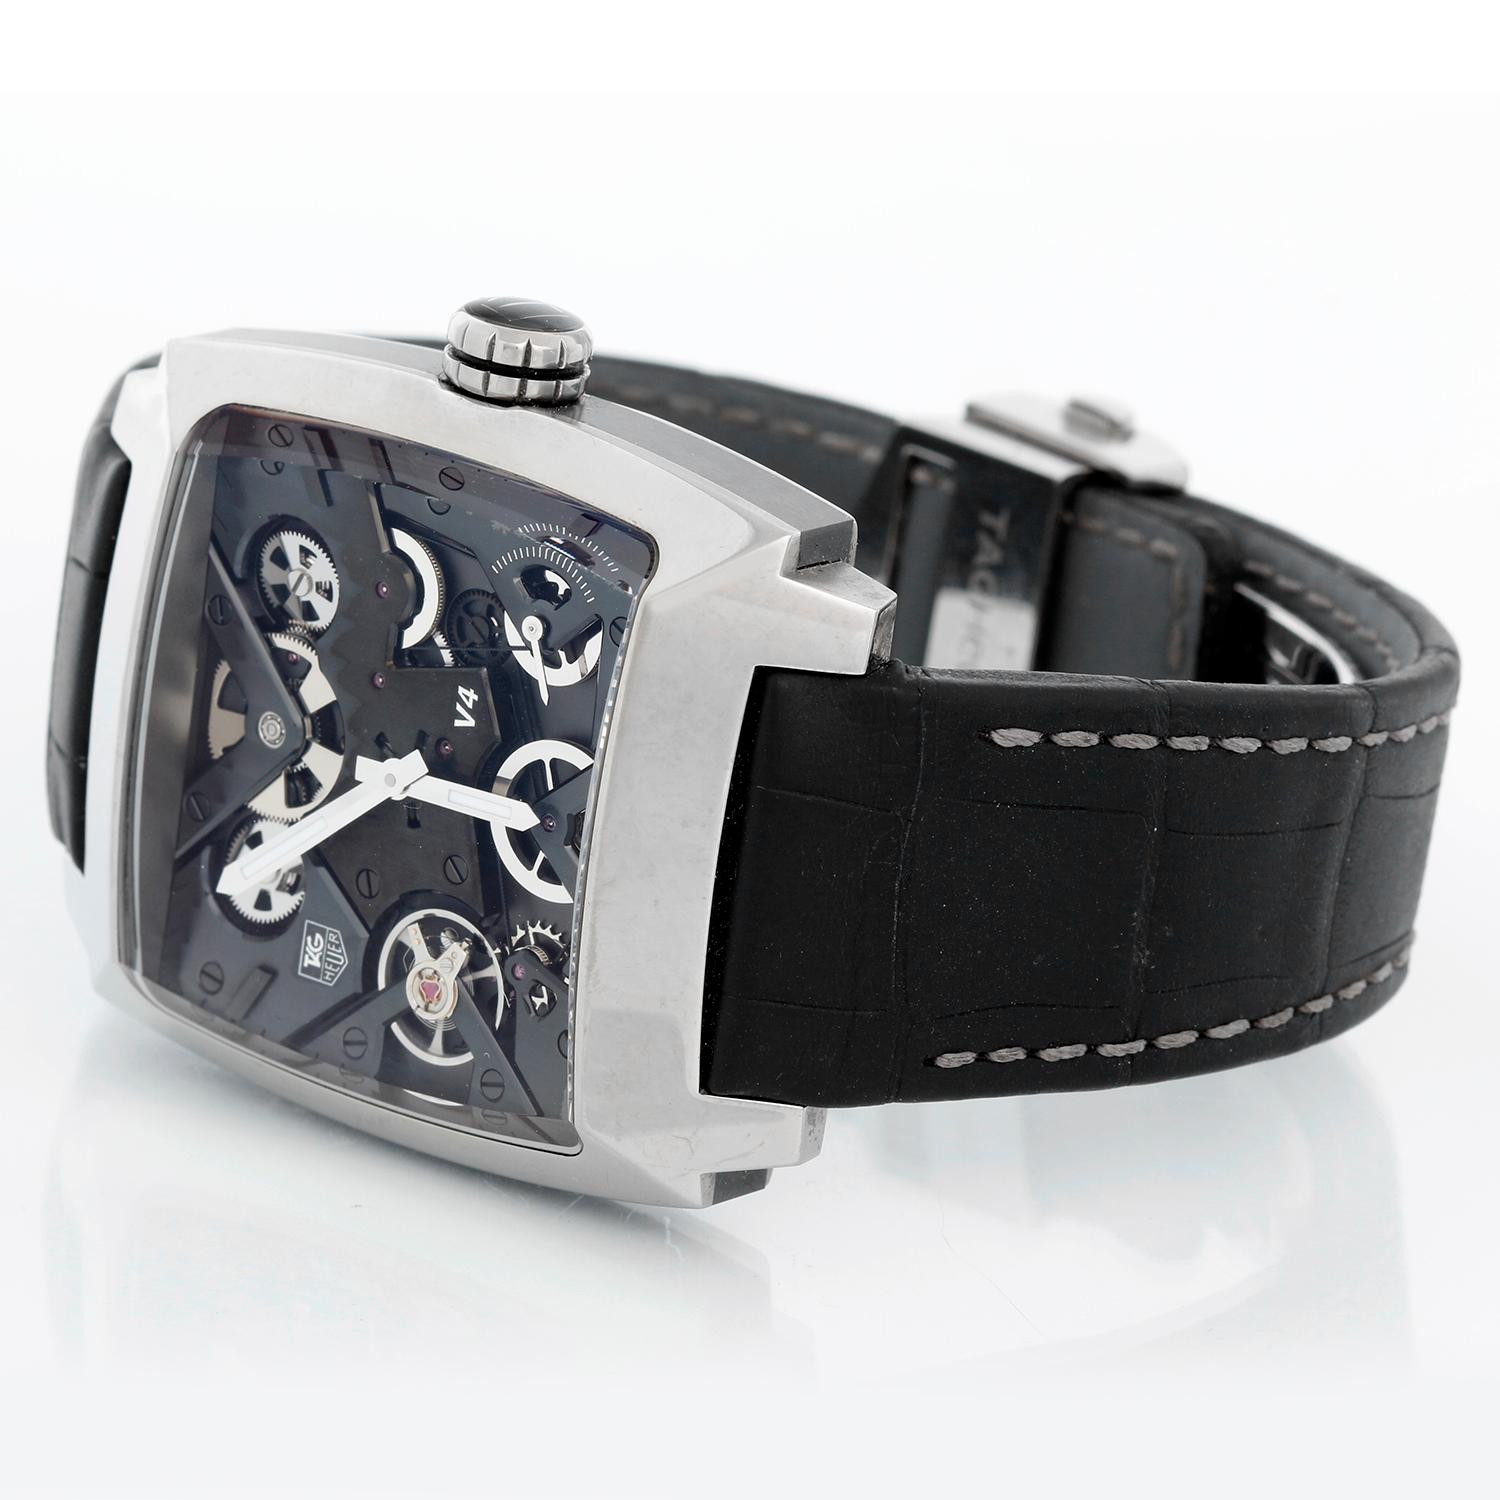 Tag Heuer Monaco V4 Limited Edition Herrenuhr WAW2080.FC6288 - Das Uhrwerk besteht aus 4 Federhäusern, die auf Kugellagern, Trieben und Riemen montiert sind. Gehäuse aus poliertem Titan mit fein gebürsteter Keramik (41 mm) mit Saphirboden.